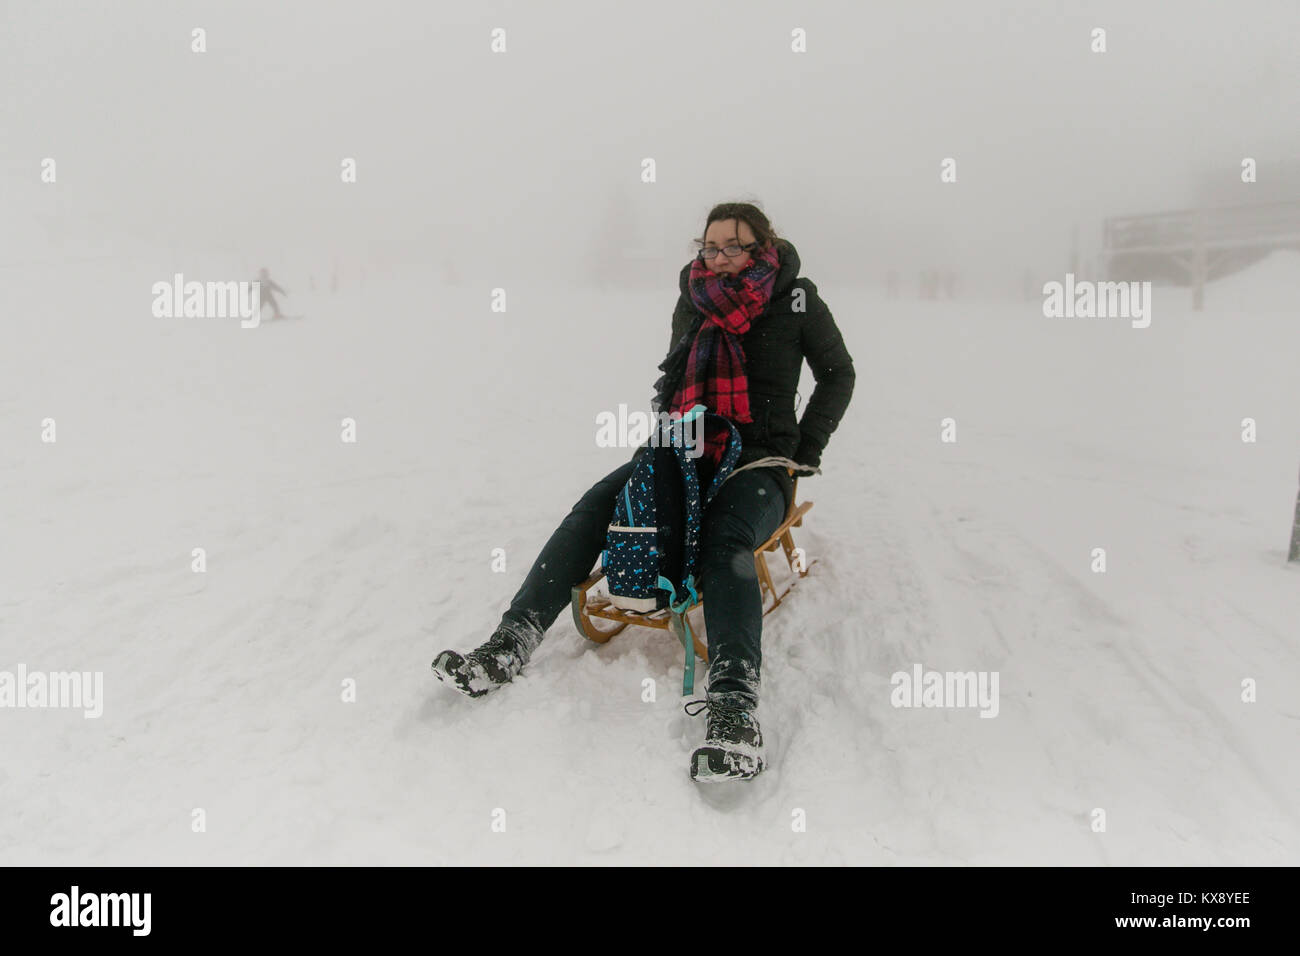 Mädchen Spaß haben, die versuchen, auf einem Schlitten an der Misty zu reiten und im Schnee Gipfel Der Berg Skrzyczne in Polen Stockfoto